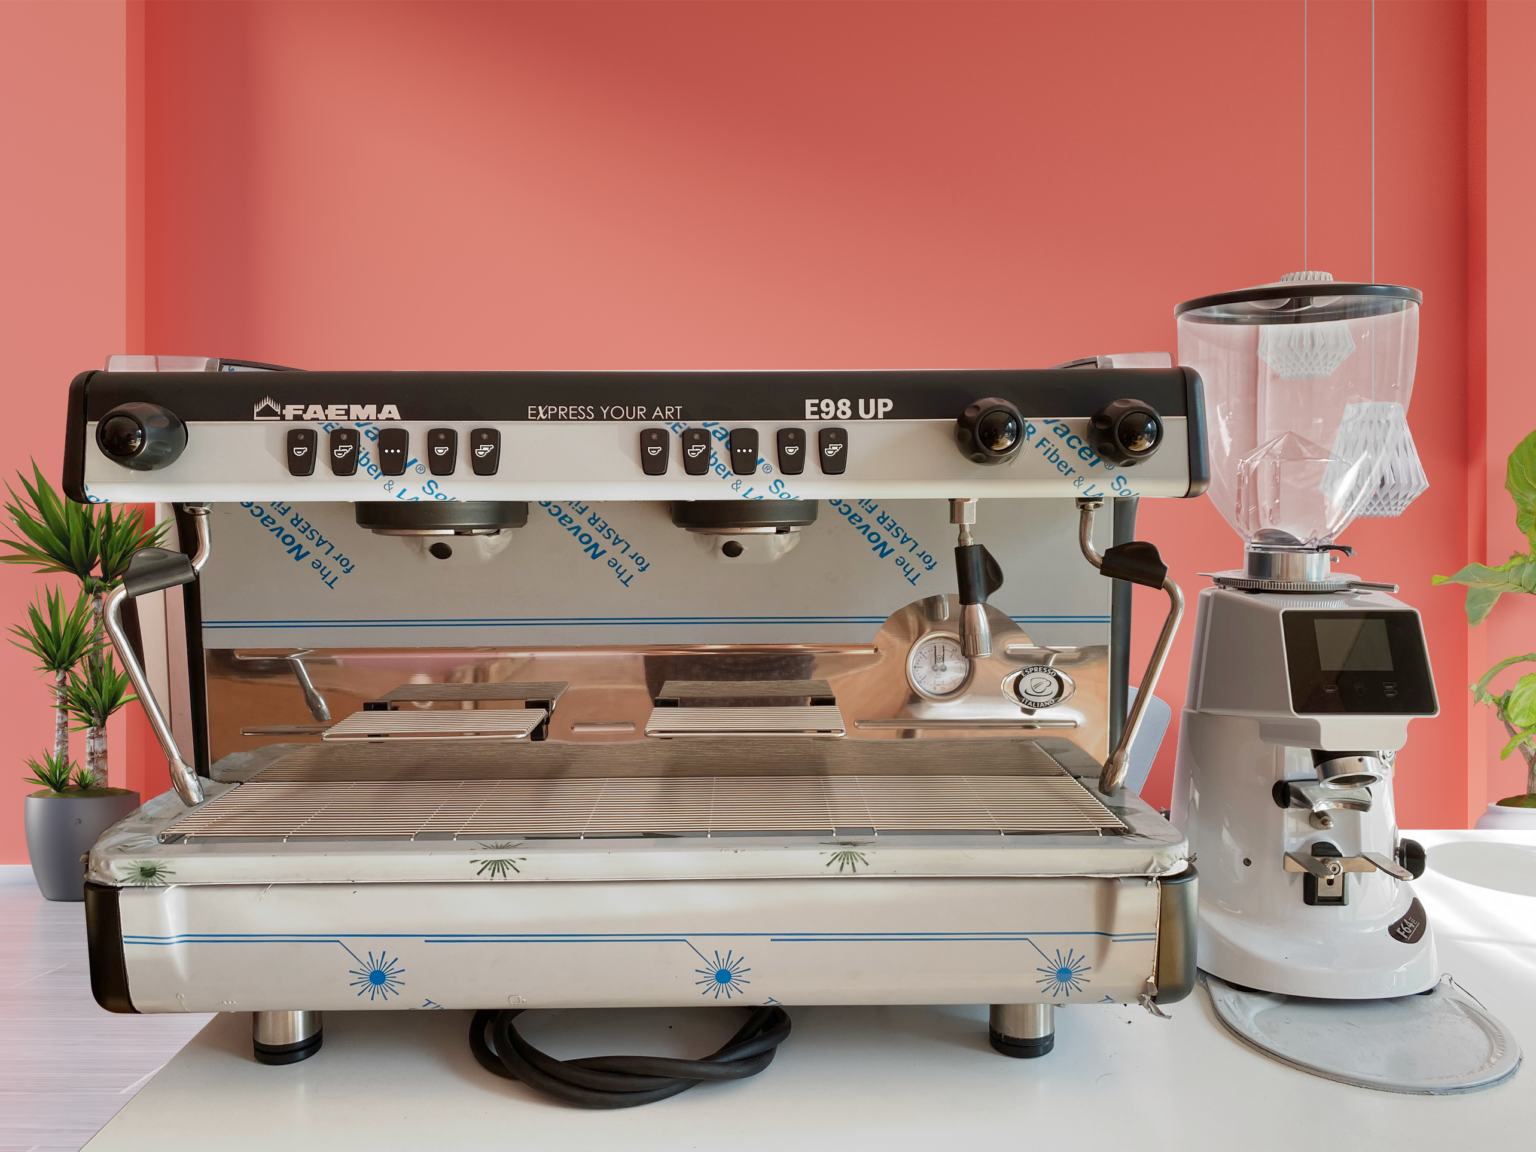 Thu mua máy pha cà phê chất lượng tại Mũi Né - Dịch vụ uy tín, giá cả hợp lý